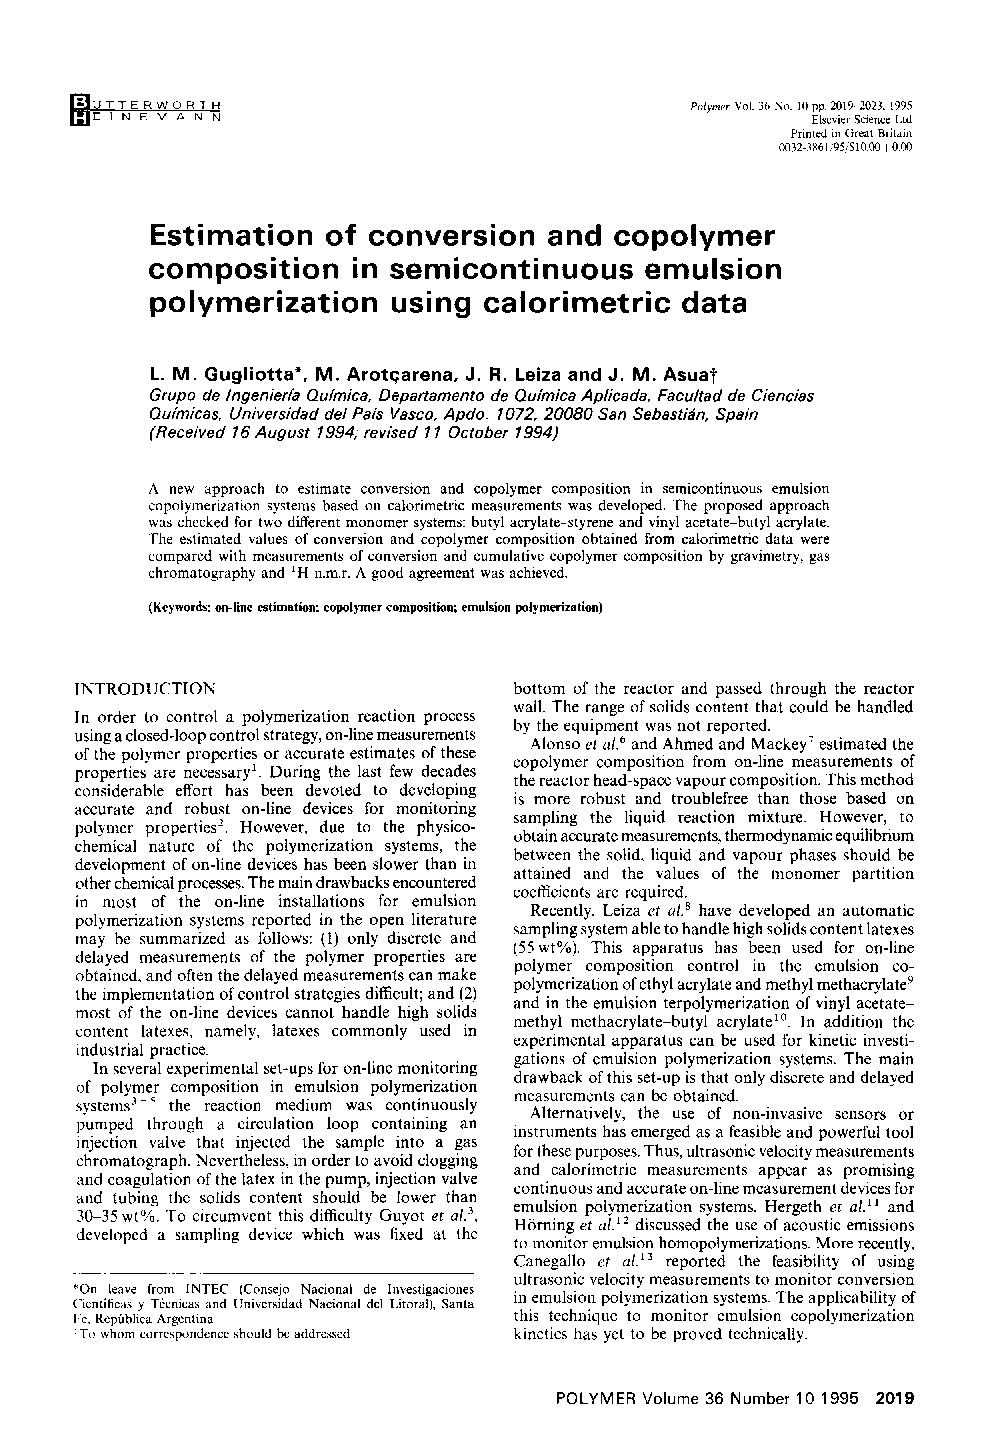 برآورد تبدیل و ترکیب کوپلیمر در پلیمریزاسیون نیمه هادی امولسیونی با استفاده از داده های کالریمتری